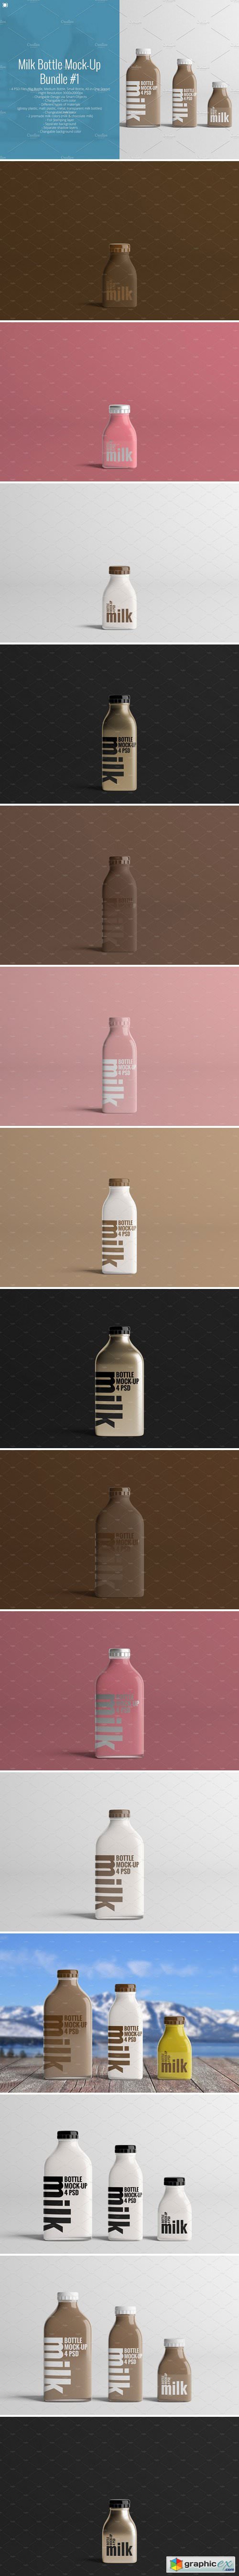 Milk Bottle Mock-Up Bundle #1